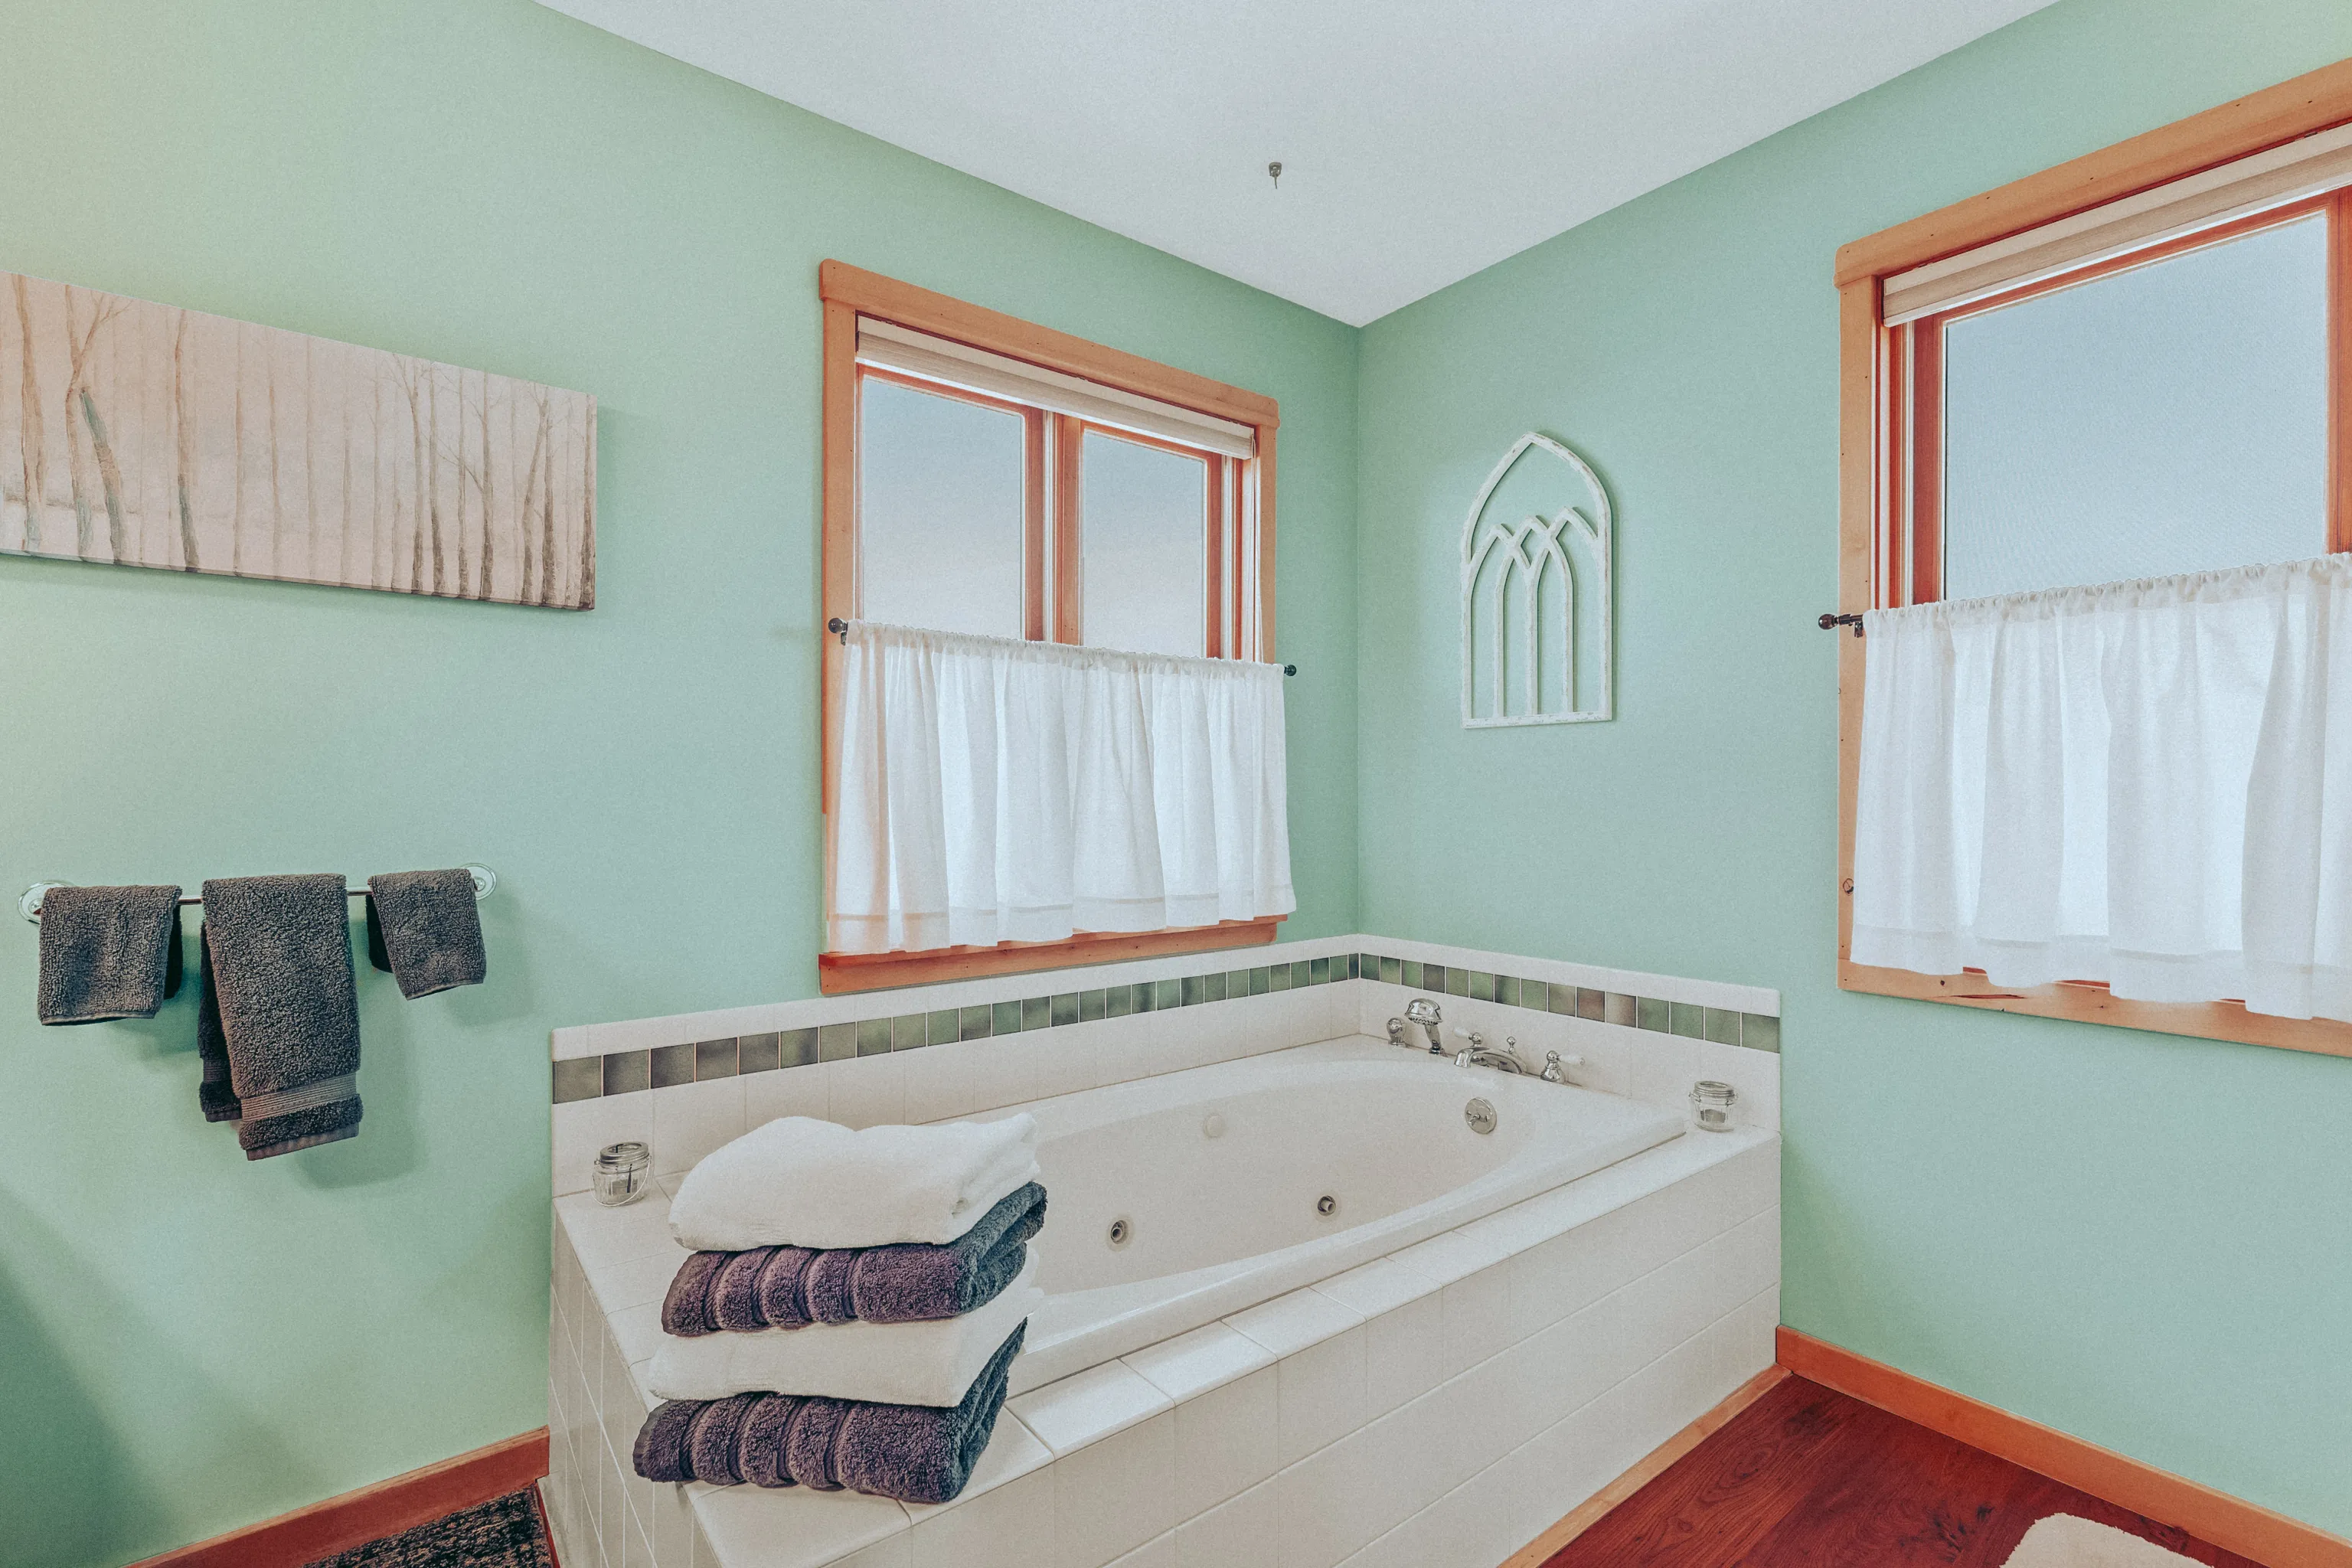 Bathroom with a hydro-massage bath